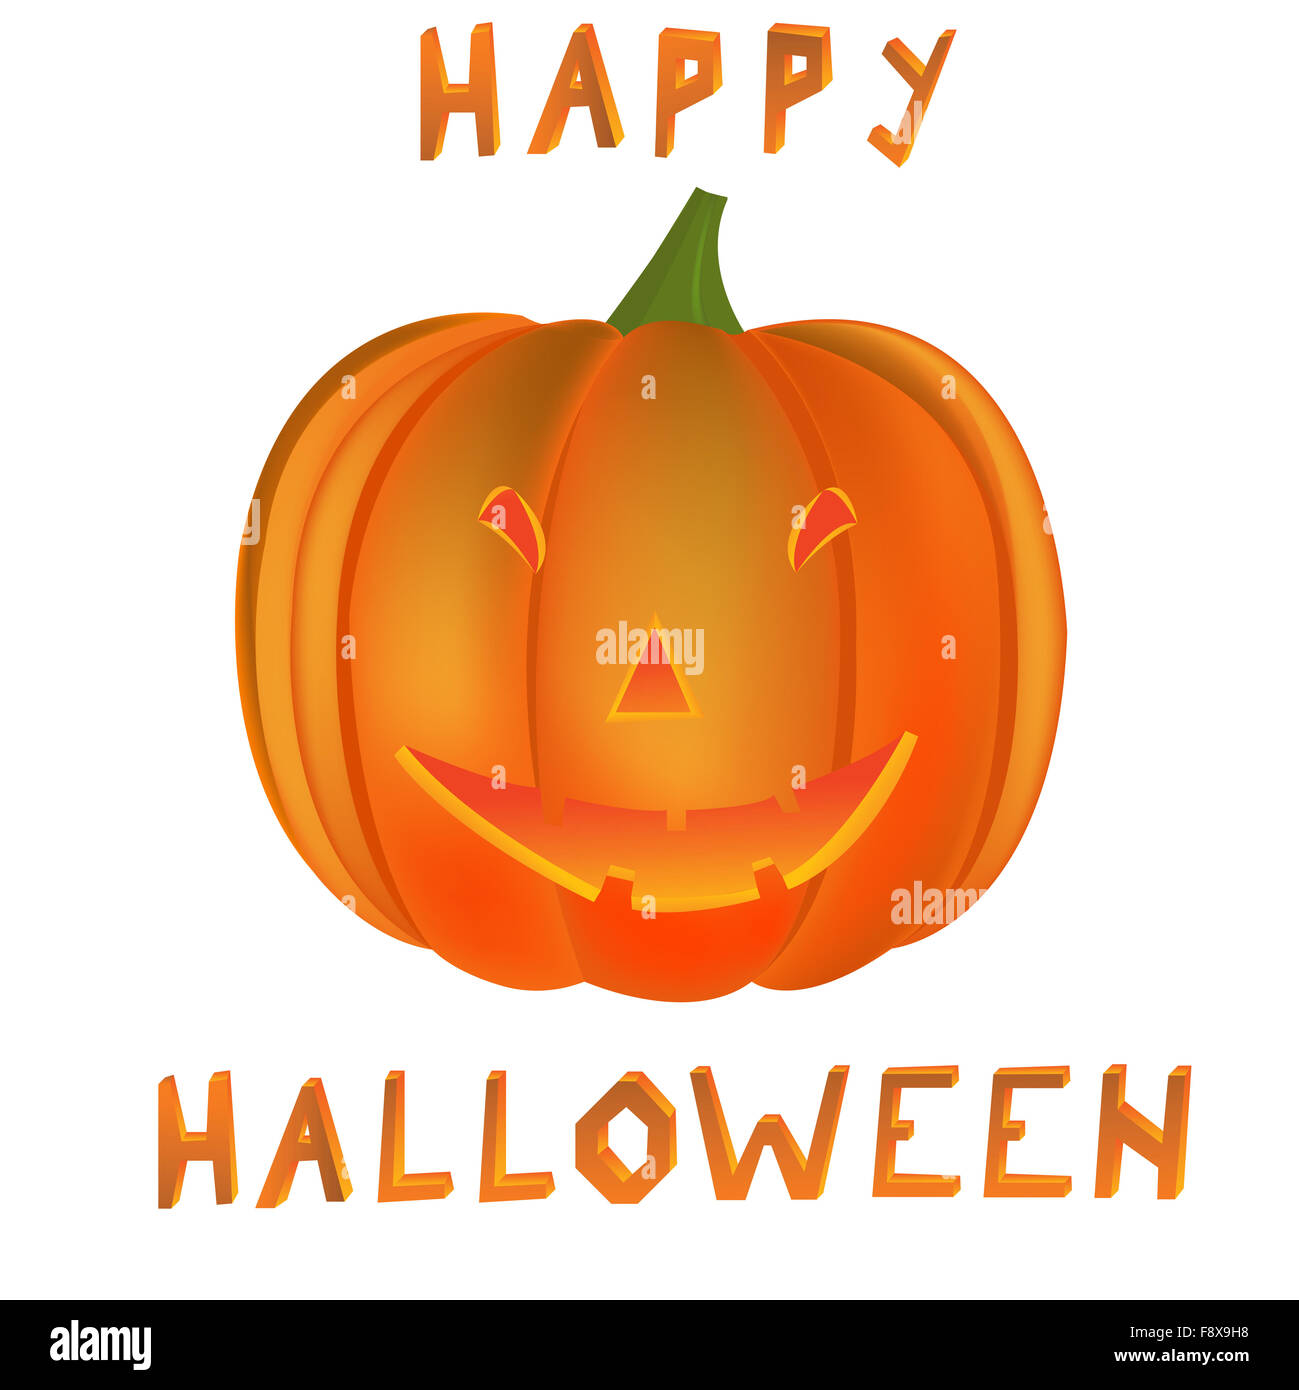 happy halloween pumpkin Stock Photo